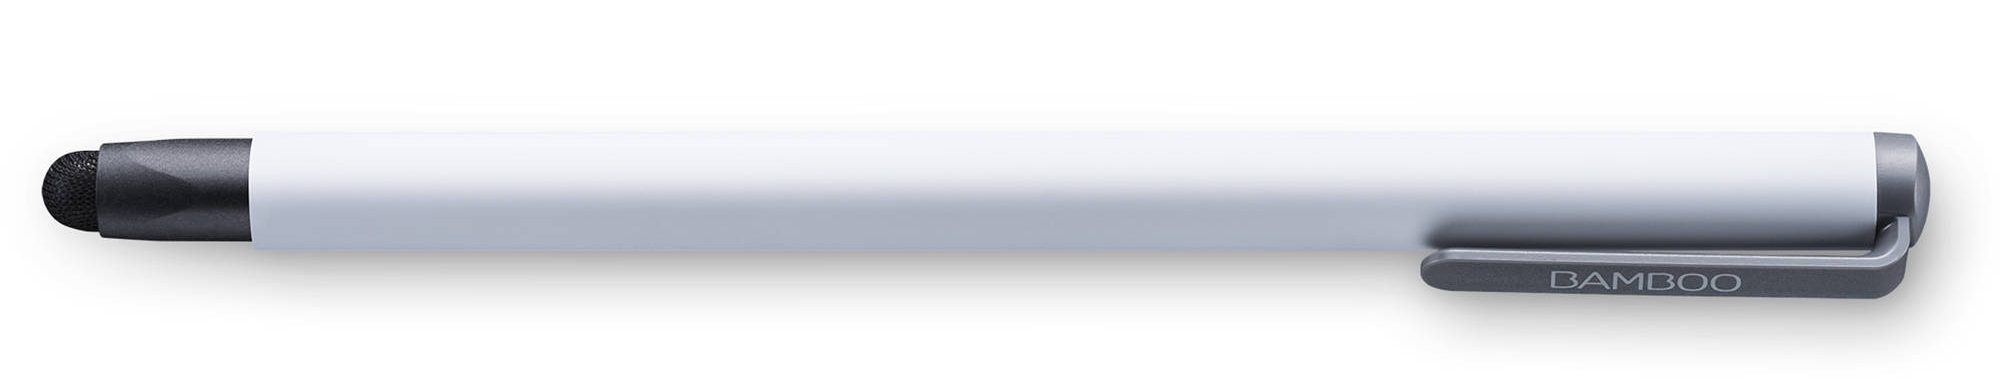 bút cảm ứng Wacom Bamboo Solo, 4th Generation (CS-190/W0-CX) thiết kế đẹp mắt màu sắc trang nhã